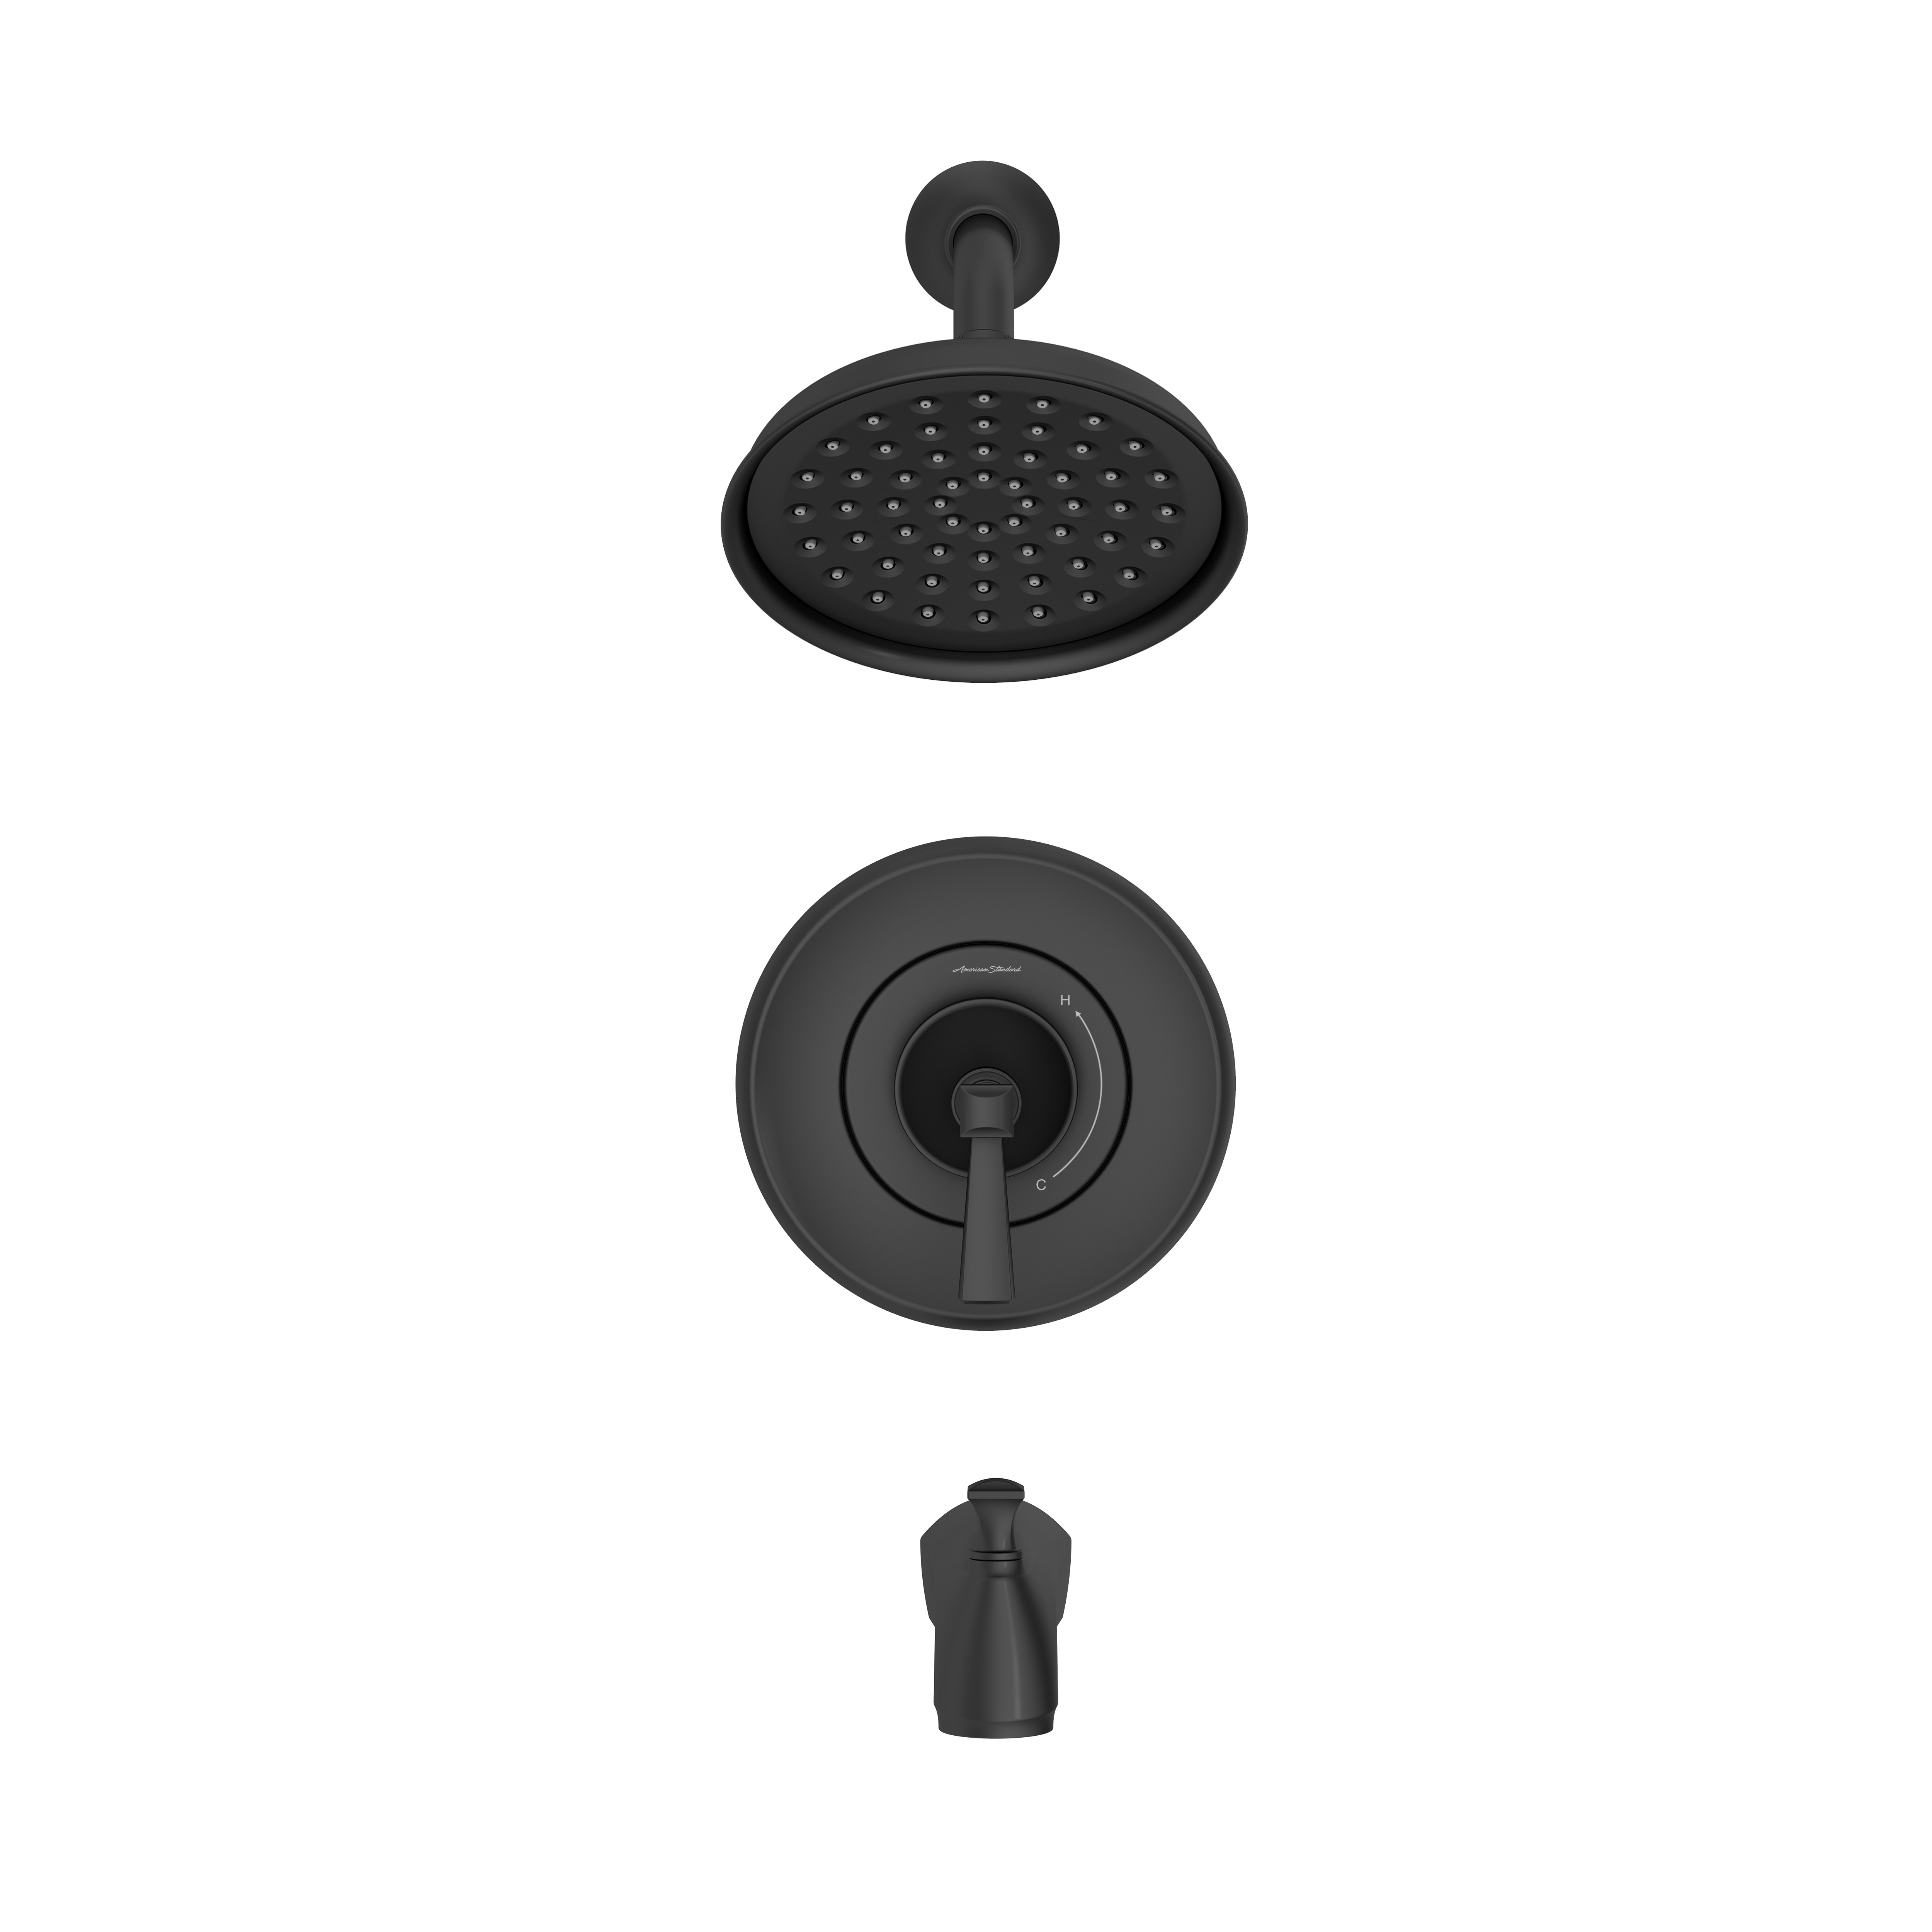 Ensemble de baignoire et garniture pour douche Glenmere MC 1,8 gpm/6,8 l/min avec pomme de douche économe en eau, cartouche à pression équilibrée en double céramique, et poignée à levier